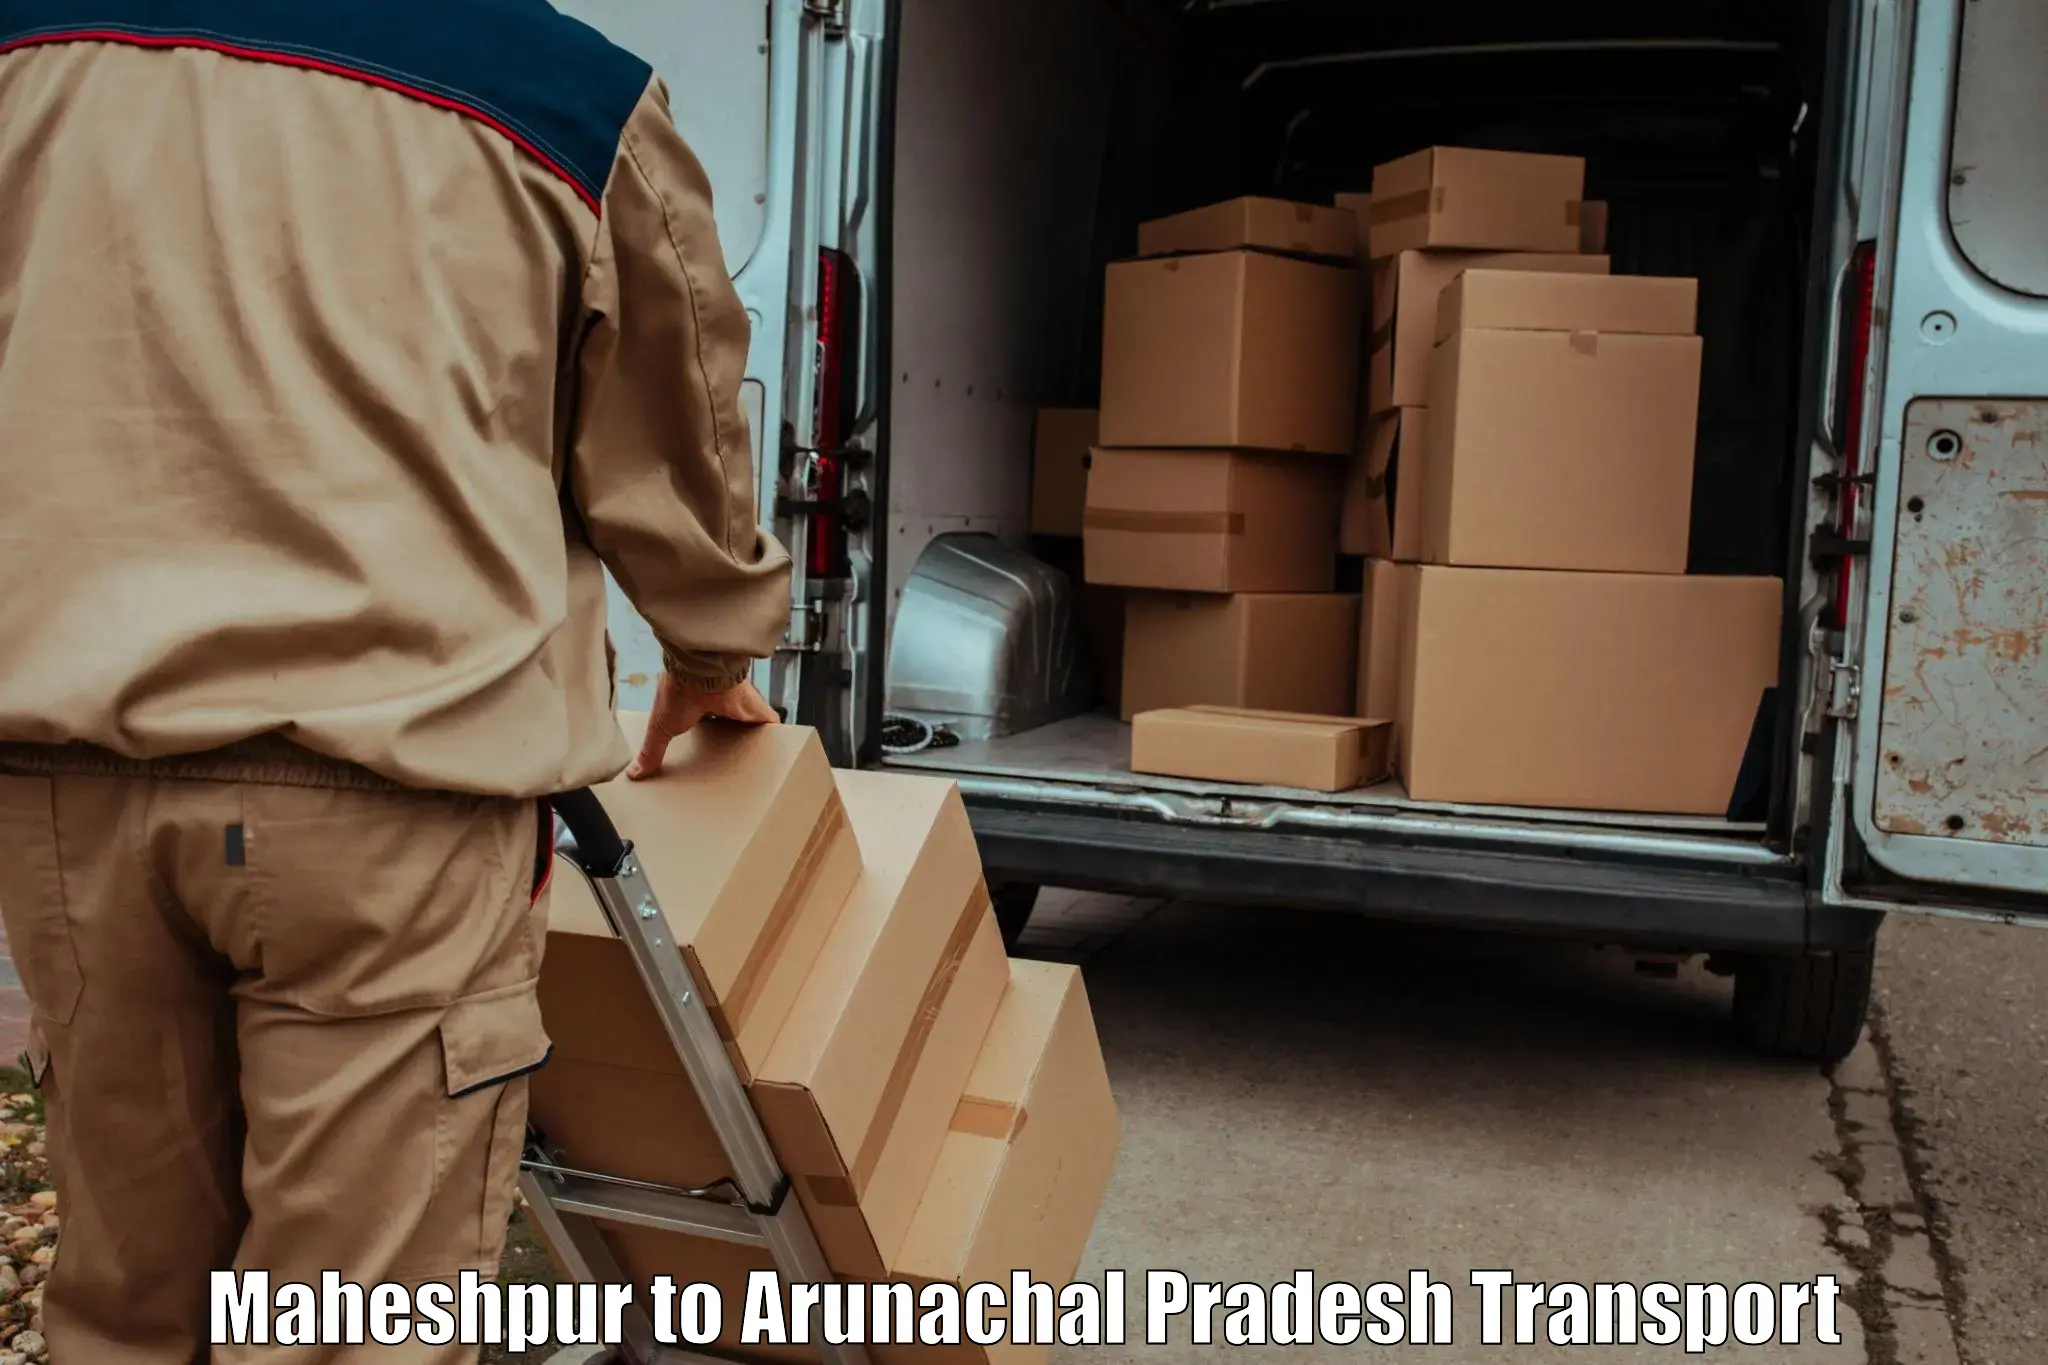 Furniture transport service Maheshpur to Basar